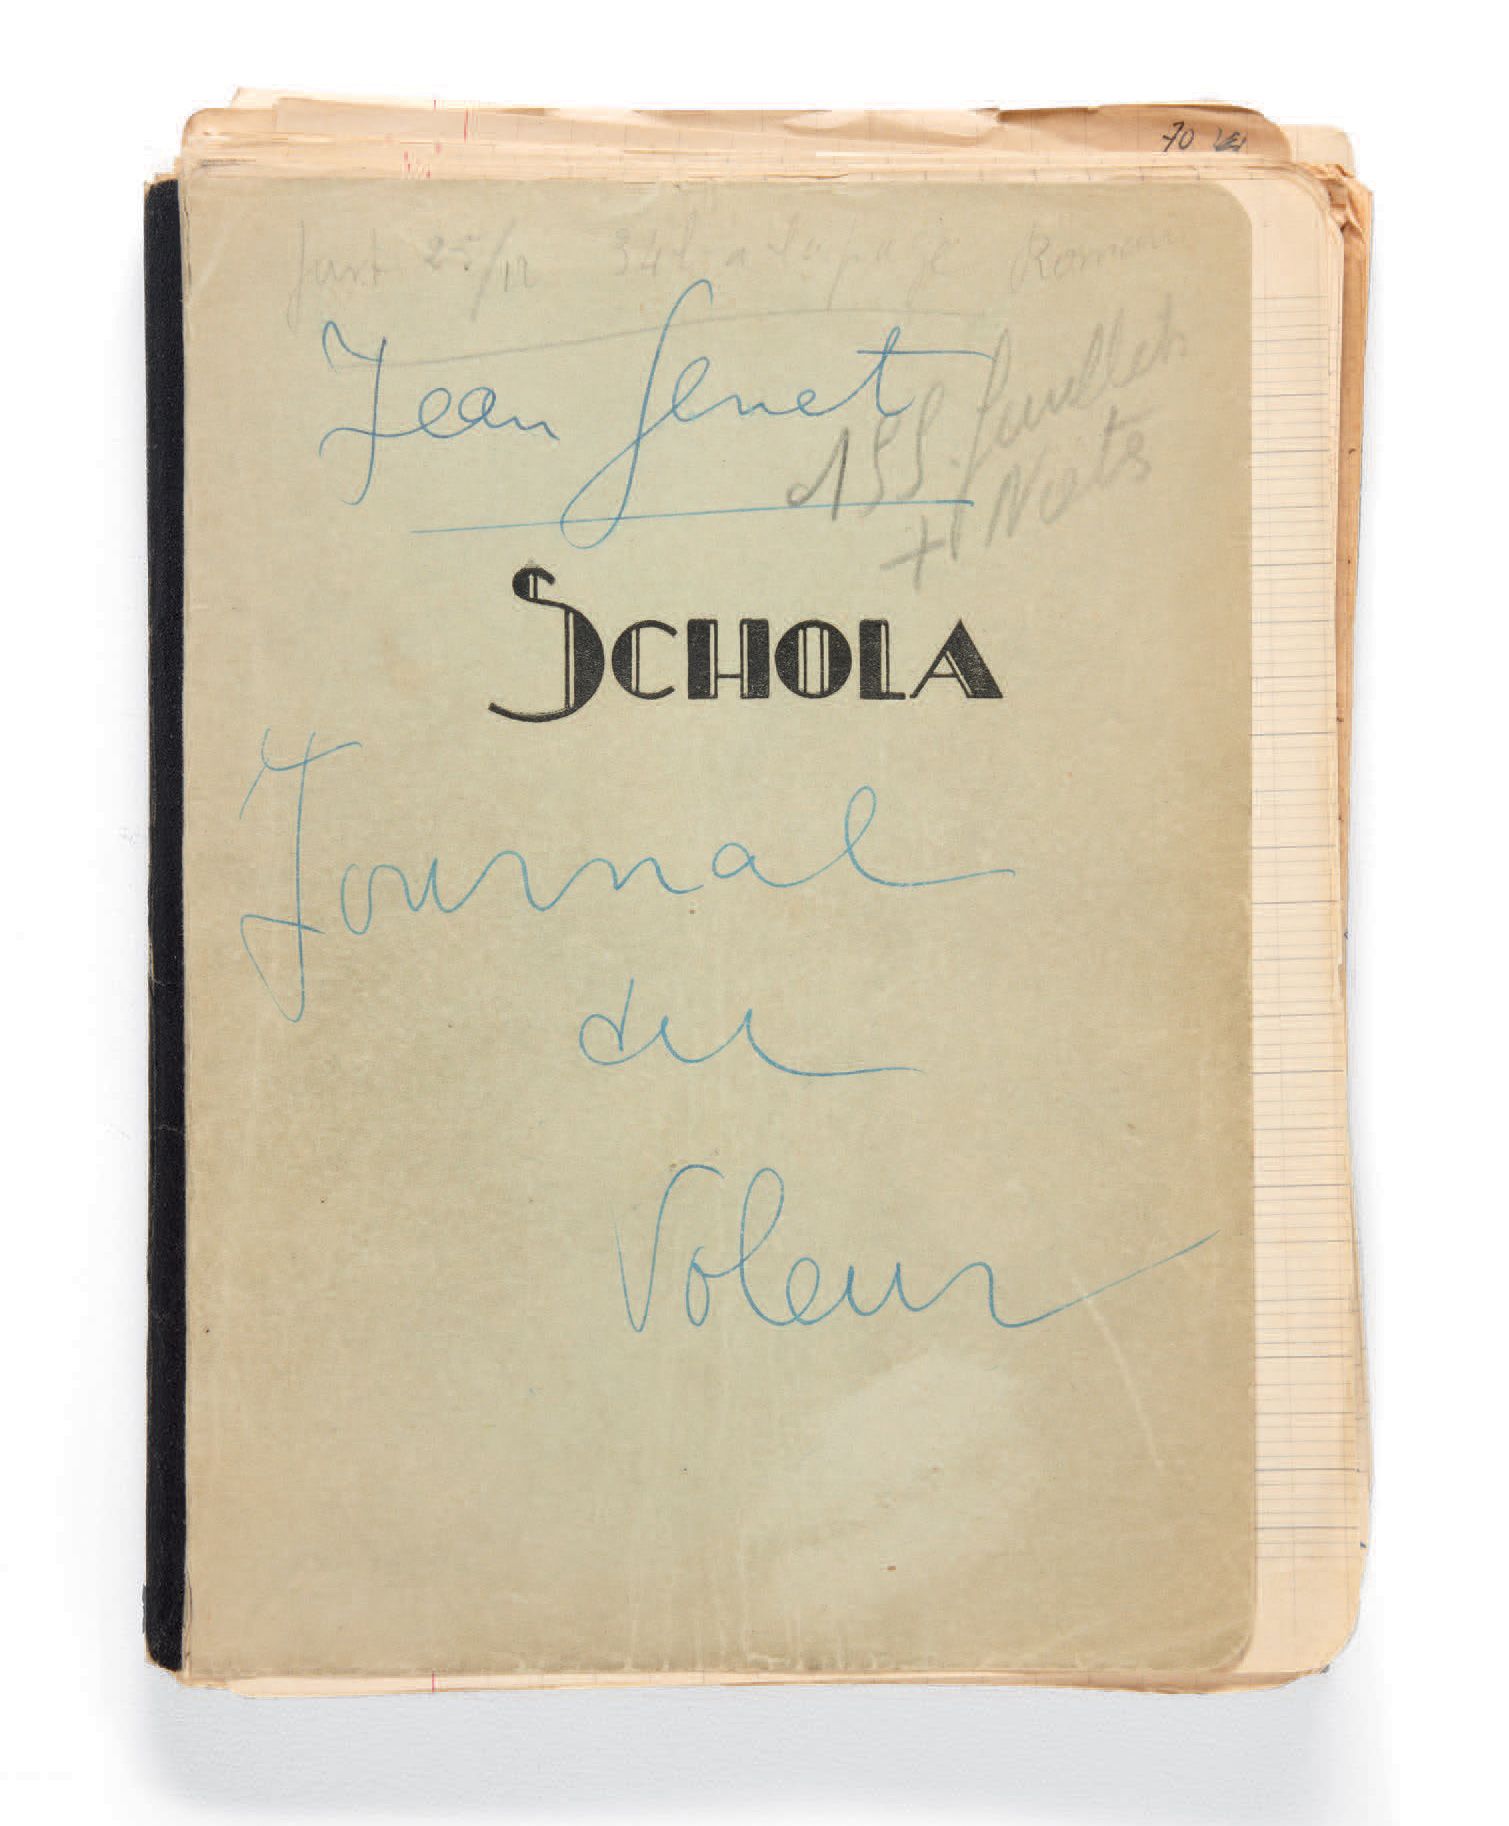 GENET, Jean. Le Journal du voleur. Octobre 1947.
Manuscrit autographe signé : em&hellip;